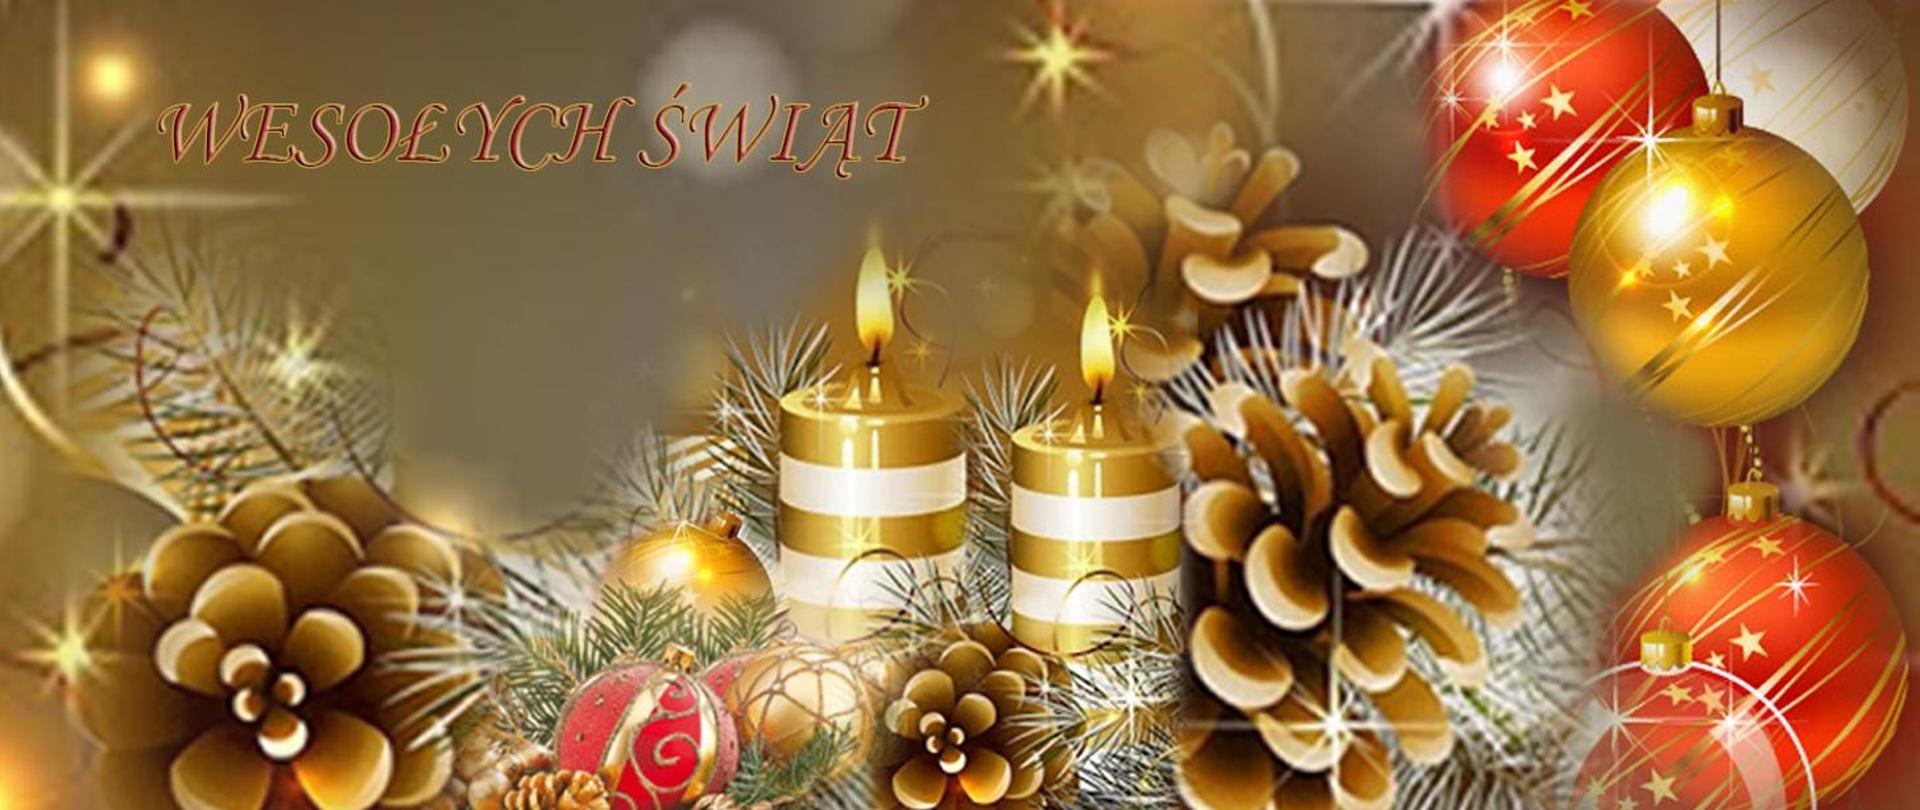 Zdjęcie dekoracyjne świąteczne z motywem szyszek, świec i bombek i z napisem wesołych świąt.